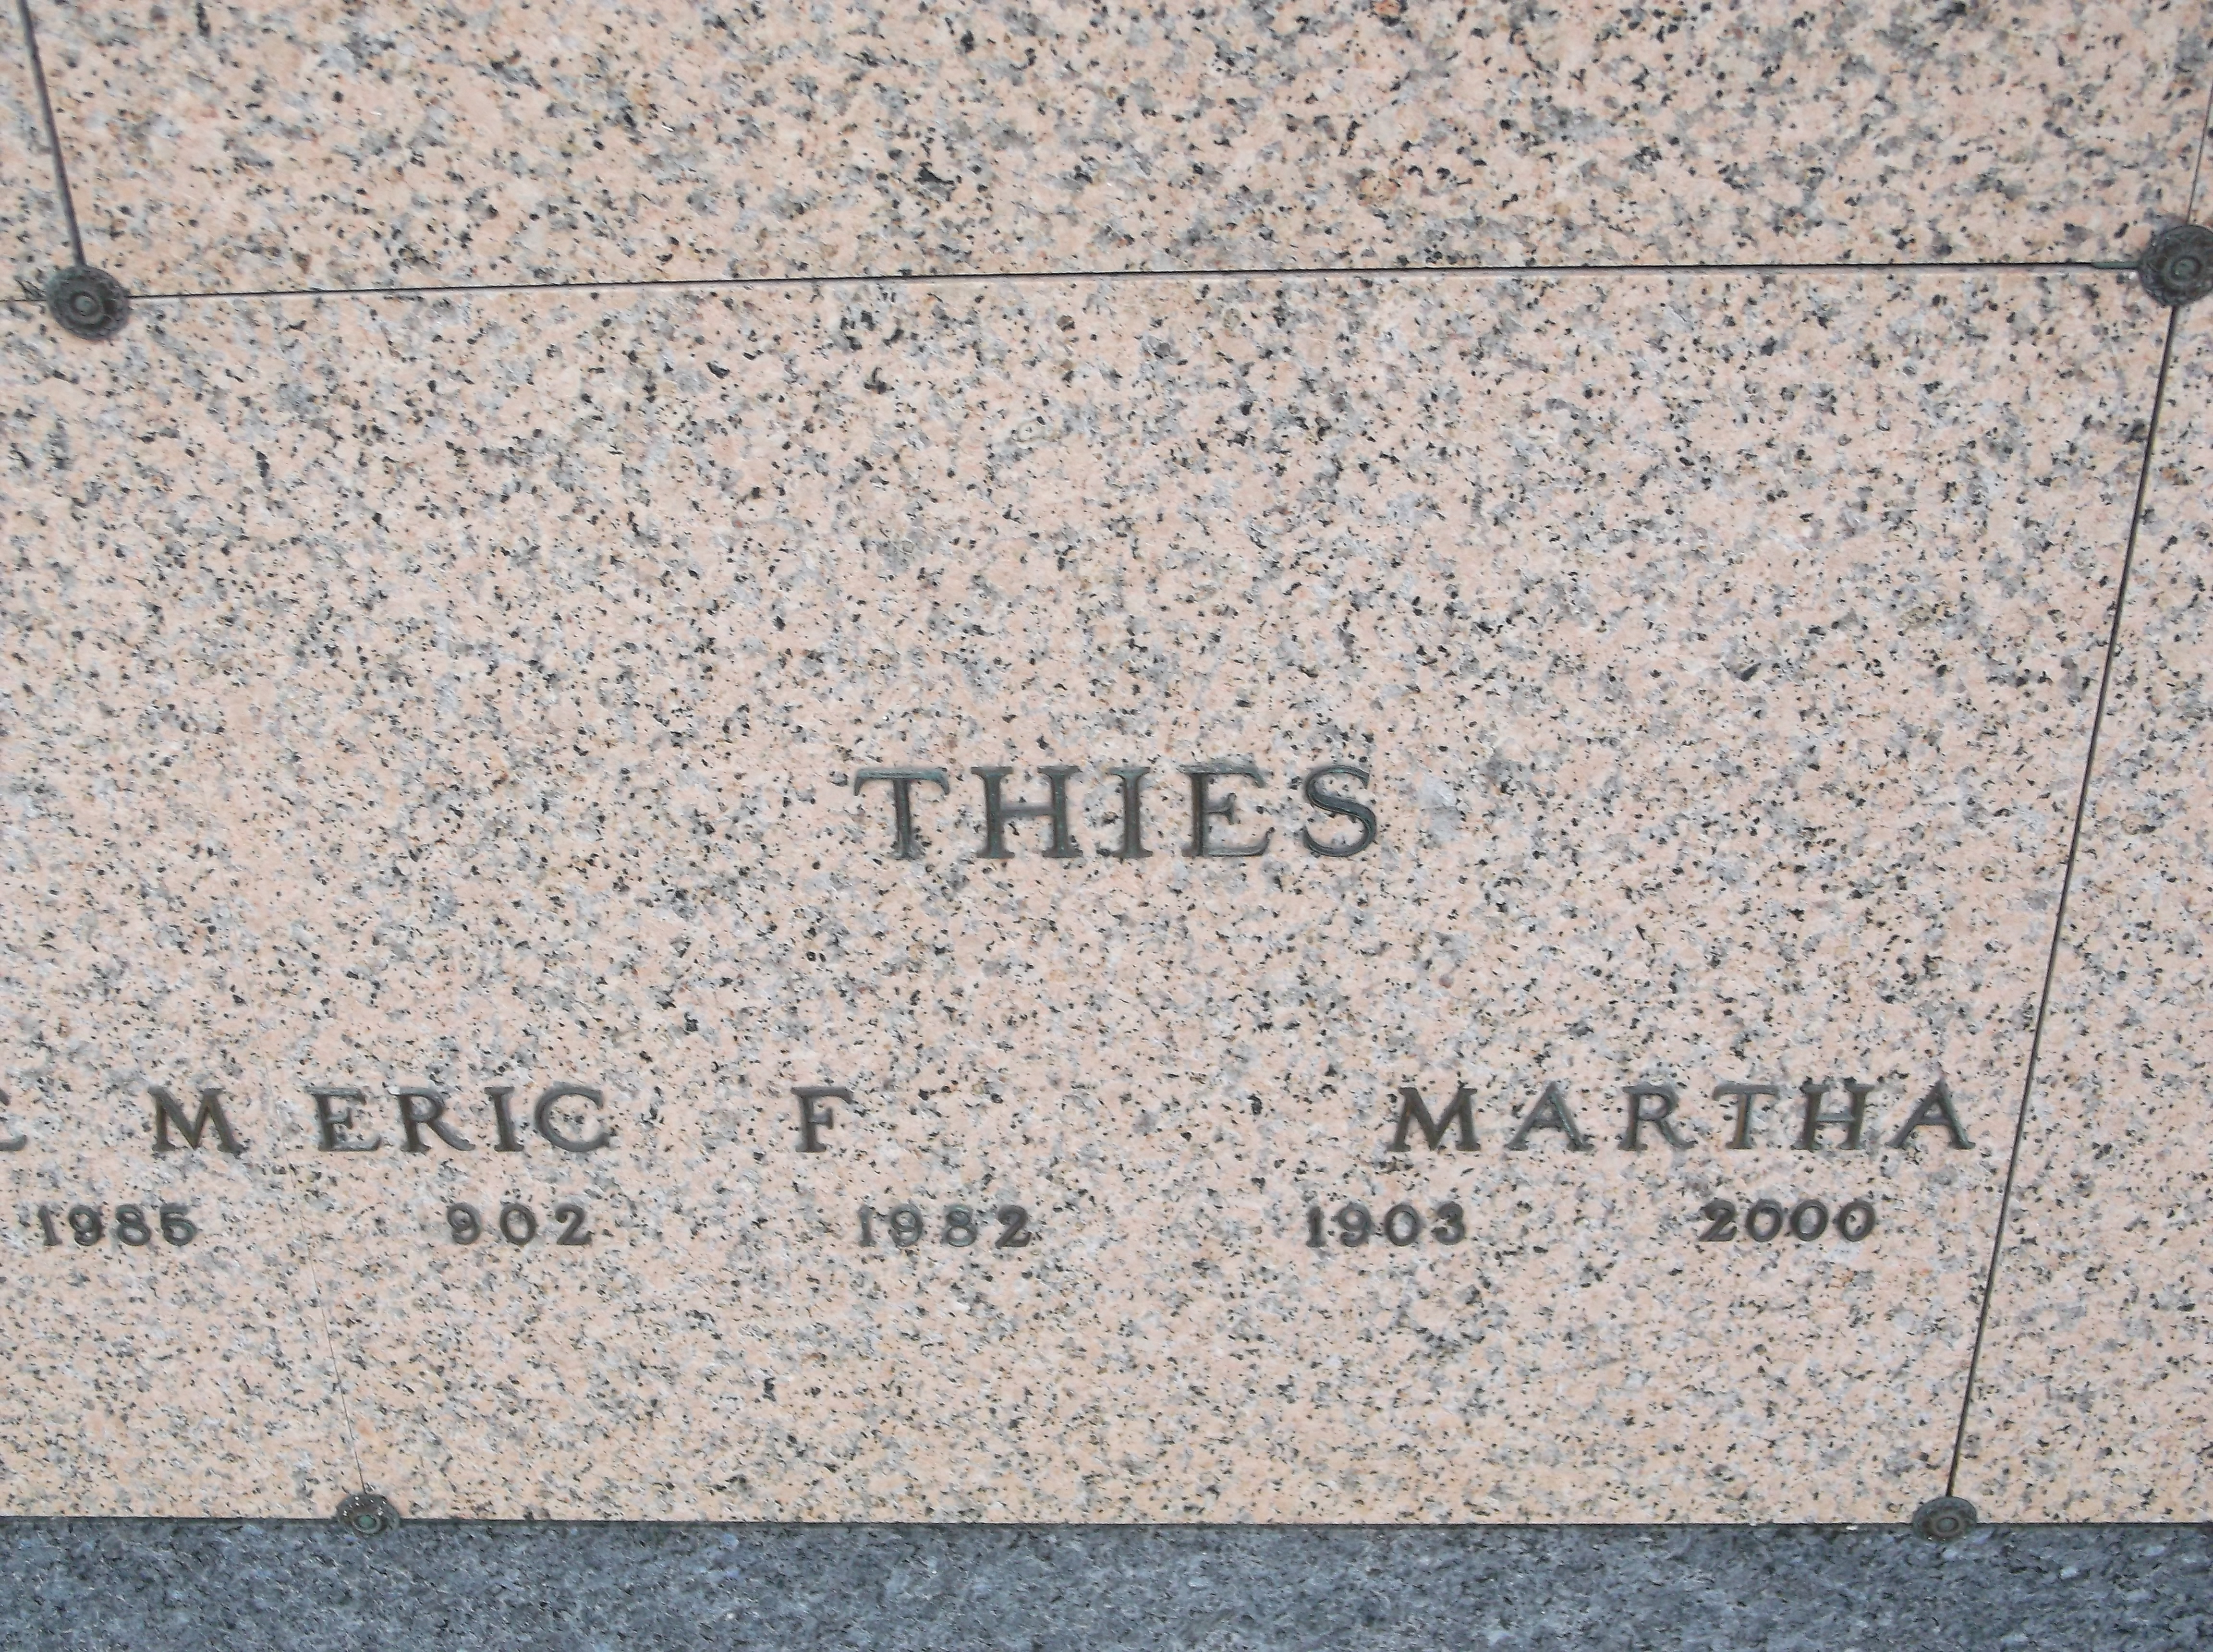 Martha Thies